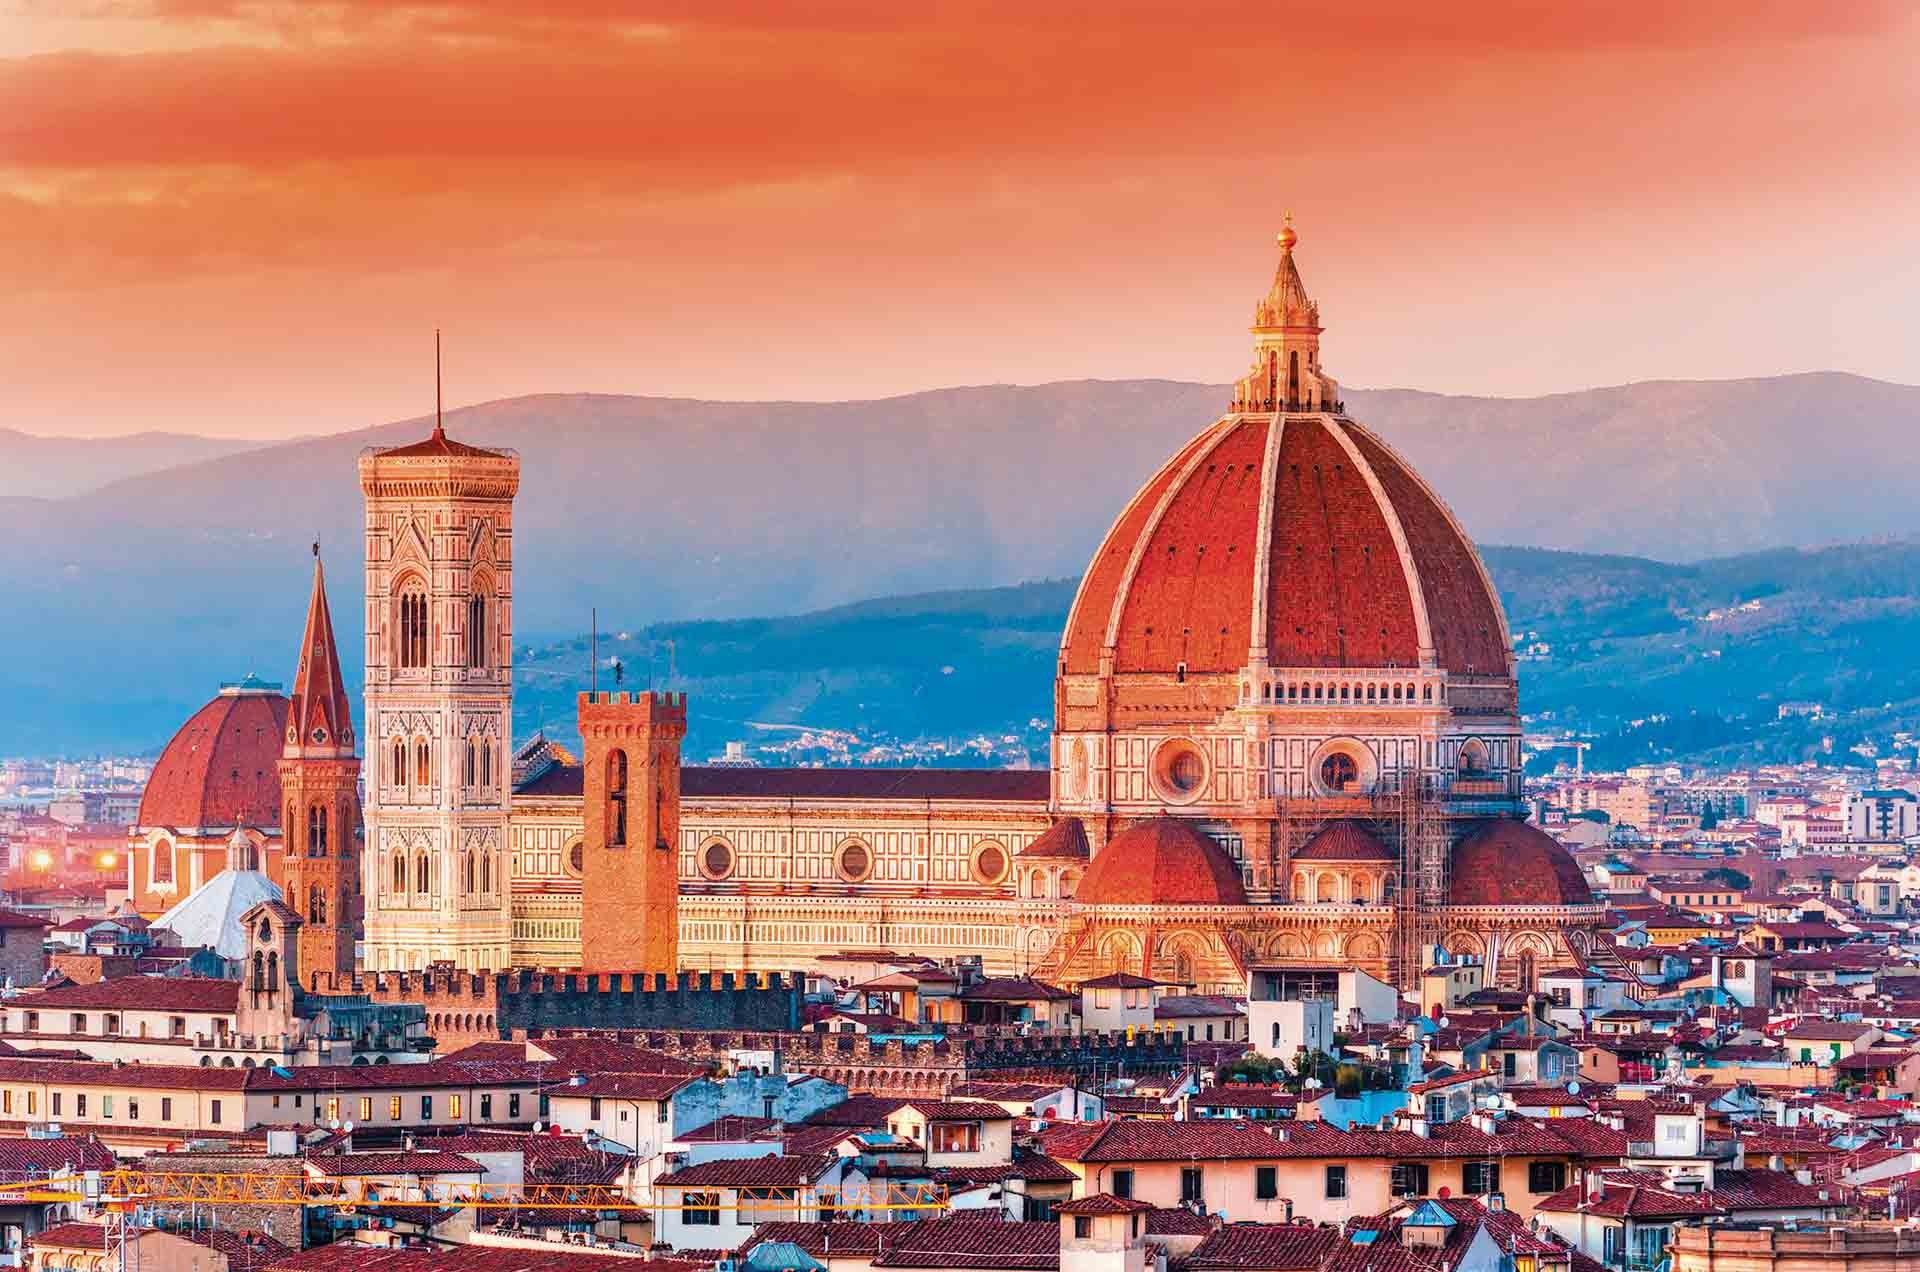 Florence khiến tôi ngỡ ngàng khi cả thành phố như một bảo tàng lịch sử khổng lồ. (Nguồn: Shutterstock)